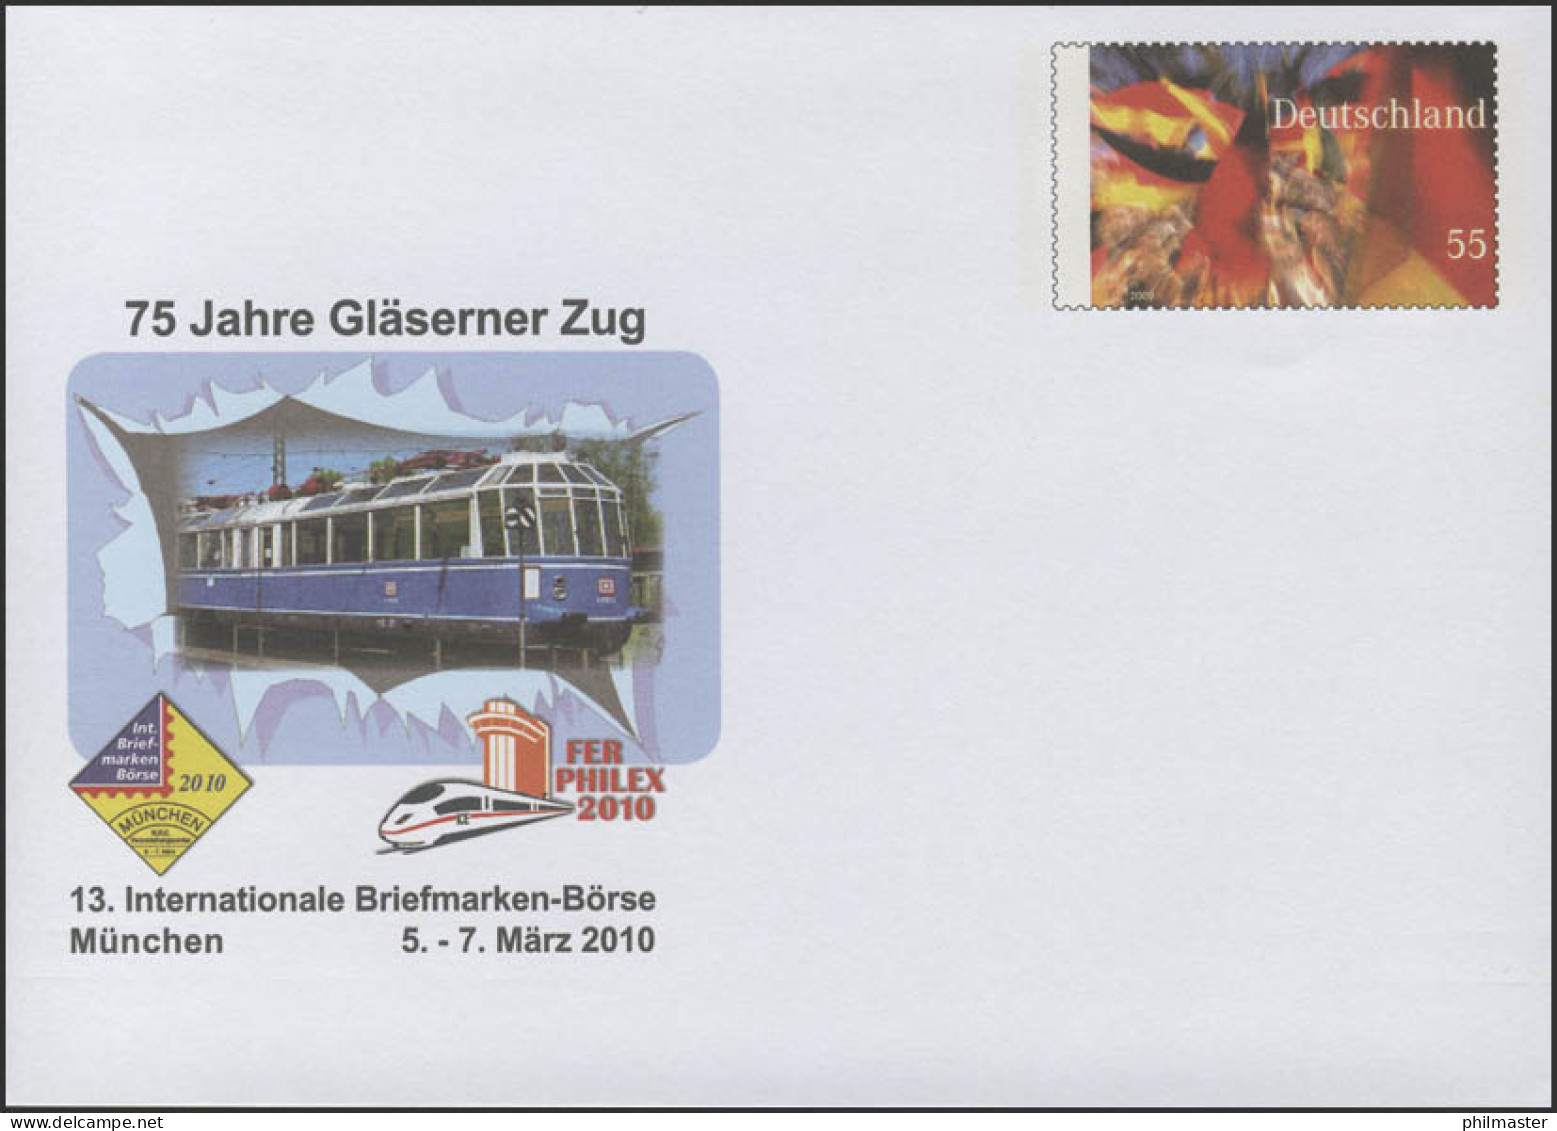 USo 201 Börse München - Der Gläserne Zug 2010, ** - Covers - Mint